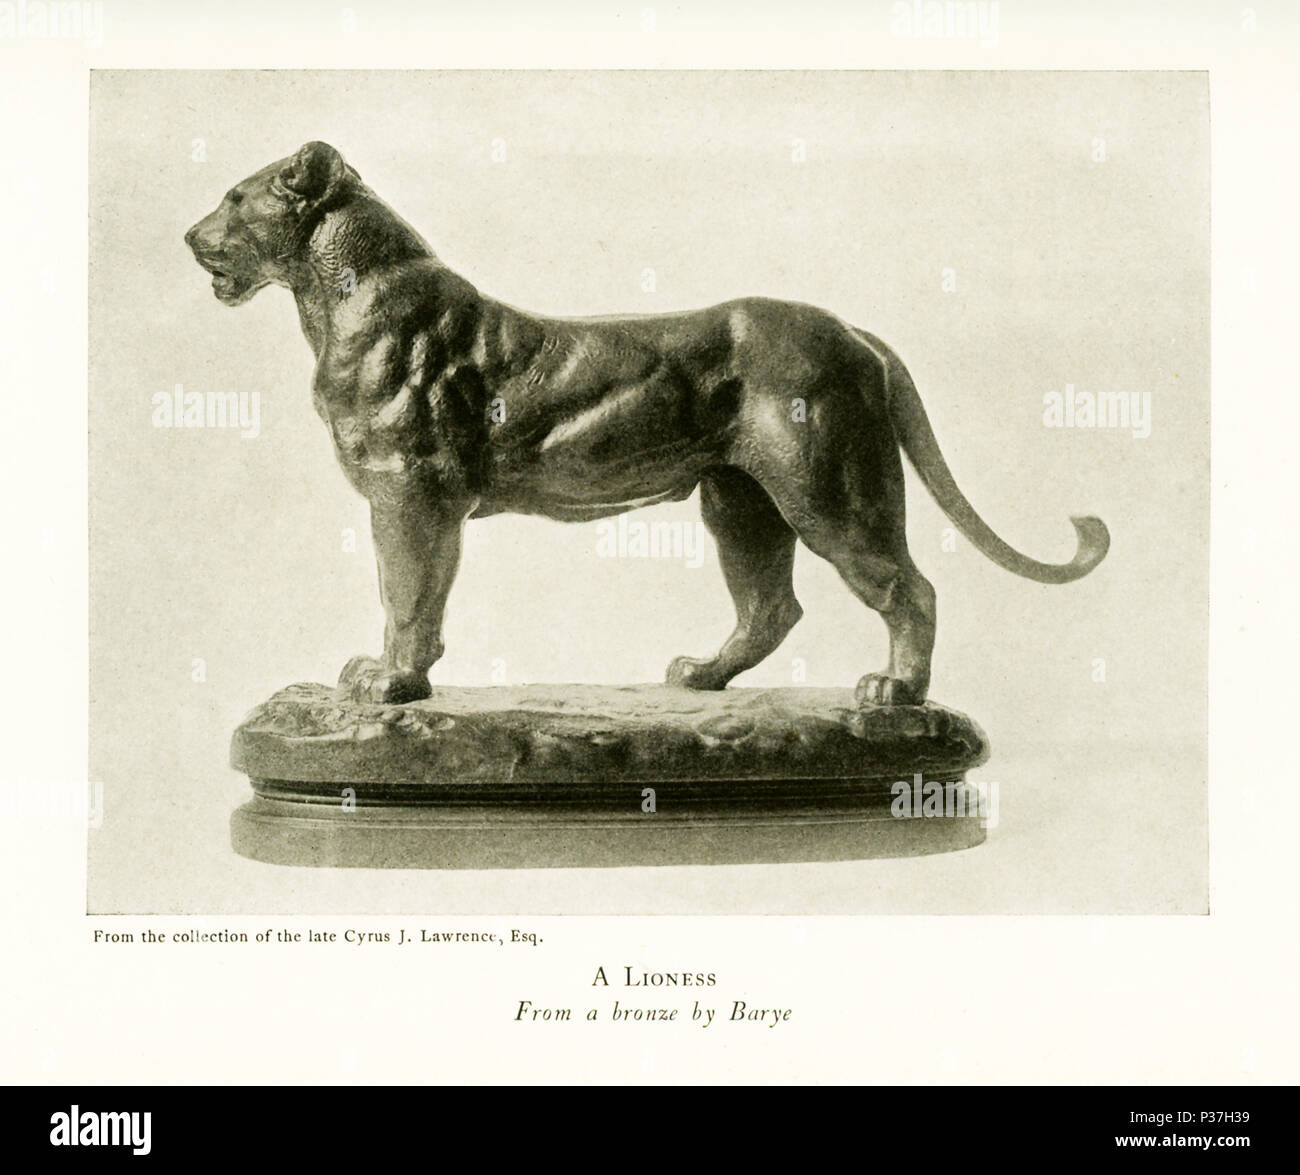 Antoine Louis Barye (1795-1875) était un sculpteur français romantique. Il  est surtout connu comme un sculpteur d'animaux (par conséquent, un  animalier). Cette sculpture en bronze de Barye est intitulé "Une lionne" et